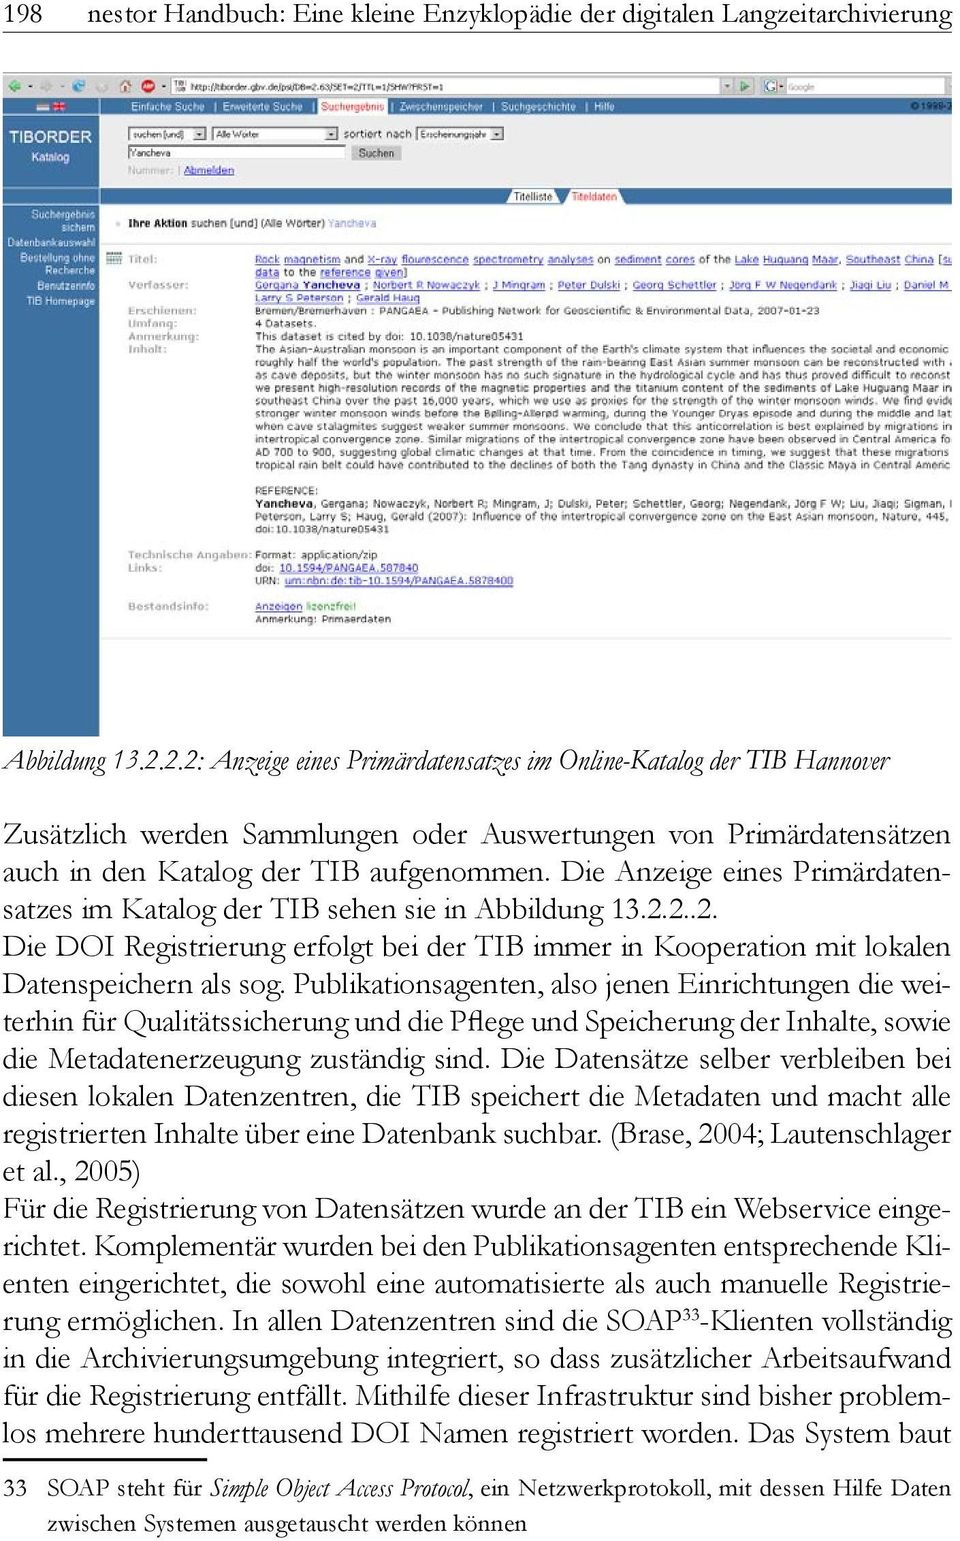 Die Anzeige eines Primärdatensatzes im Katalog der TIB sehen sie in Abbildung 13.2.2..2. Die DOI Registrierung erfolgt bei der TIB immer in Kooperation mit lokalen Datenspeichern als sog.